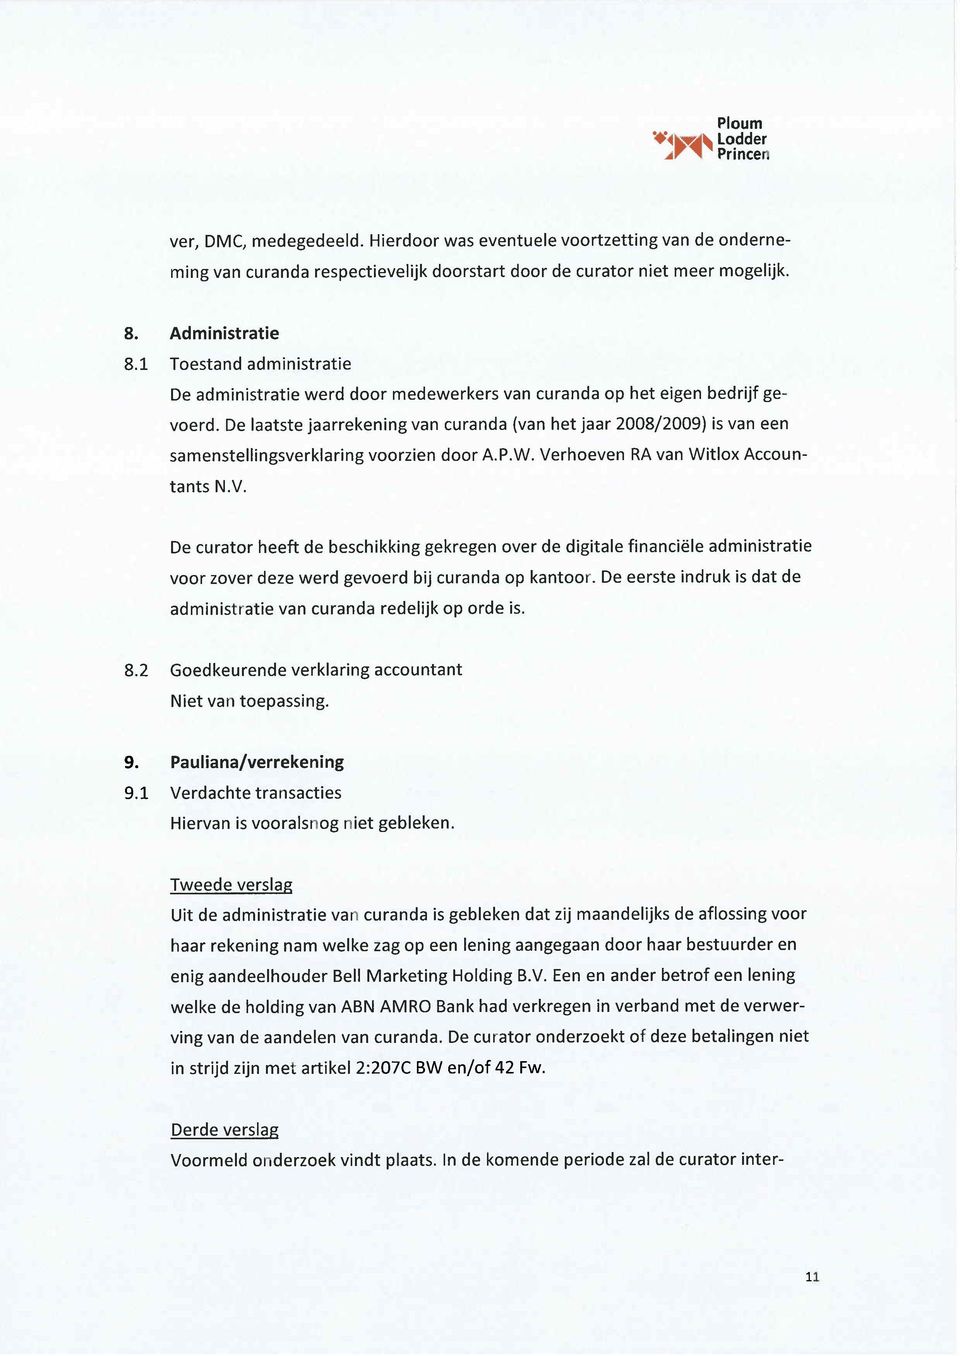 De laatste jaarrekening van curanda (van het jaar 2008/2009) is van een samenstellingsverklaring voorzien door A.P.W. Ve